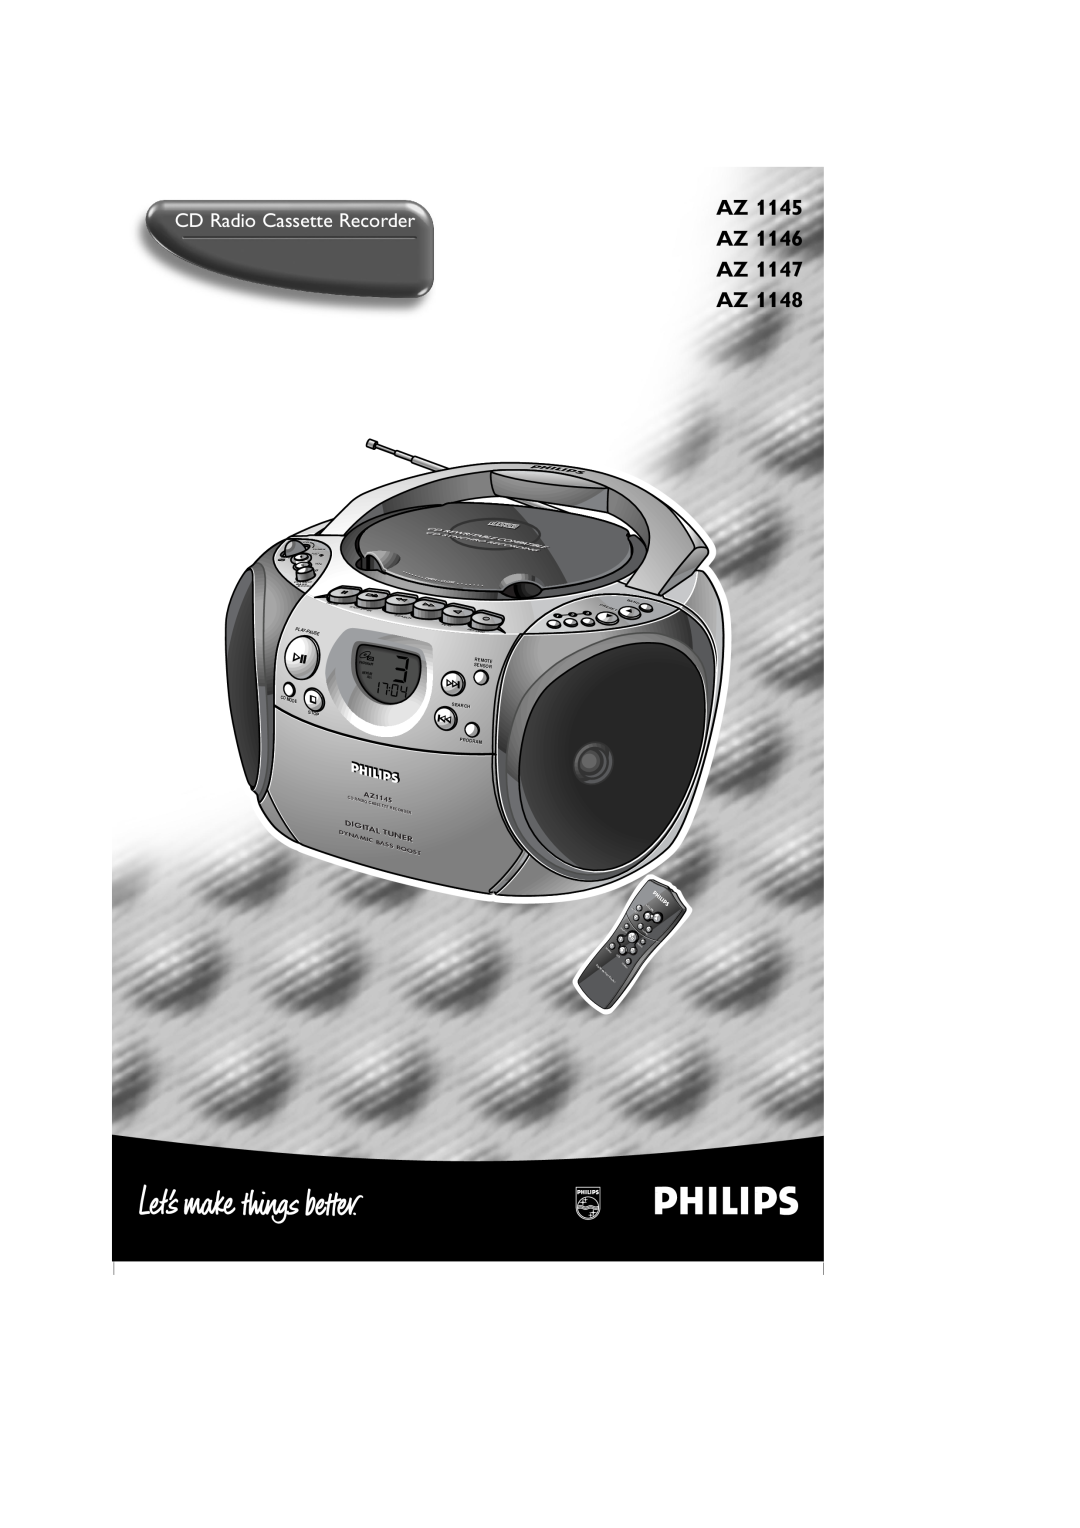 Philips AZ1148 manual AZ 1145 AZ 1146 AZ 1147 AZ, CD Radio Cassette Recorder, Digital, Tuner, RADIOAZ1145, Dynamic, Bass 